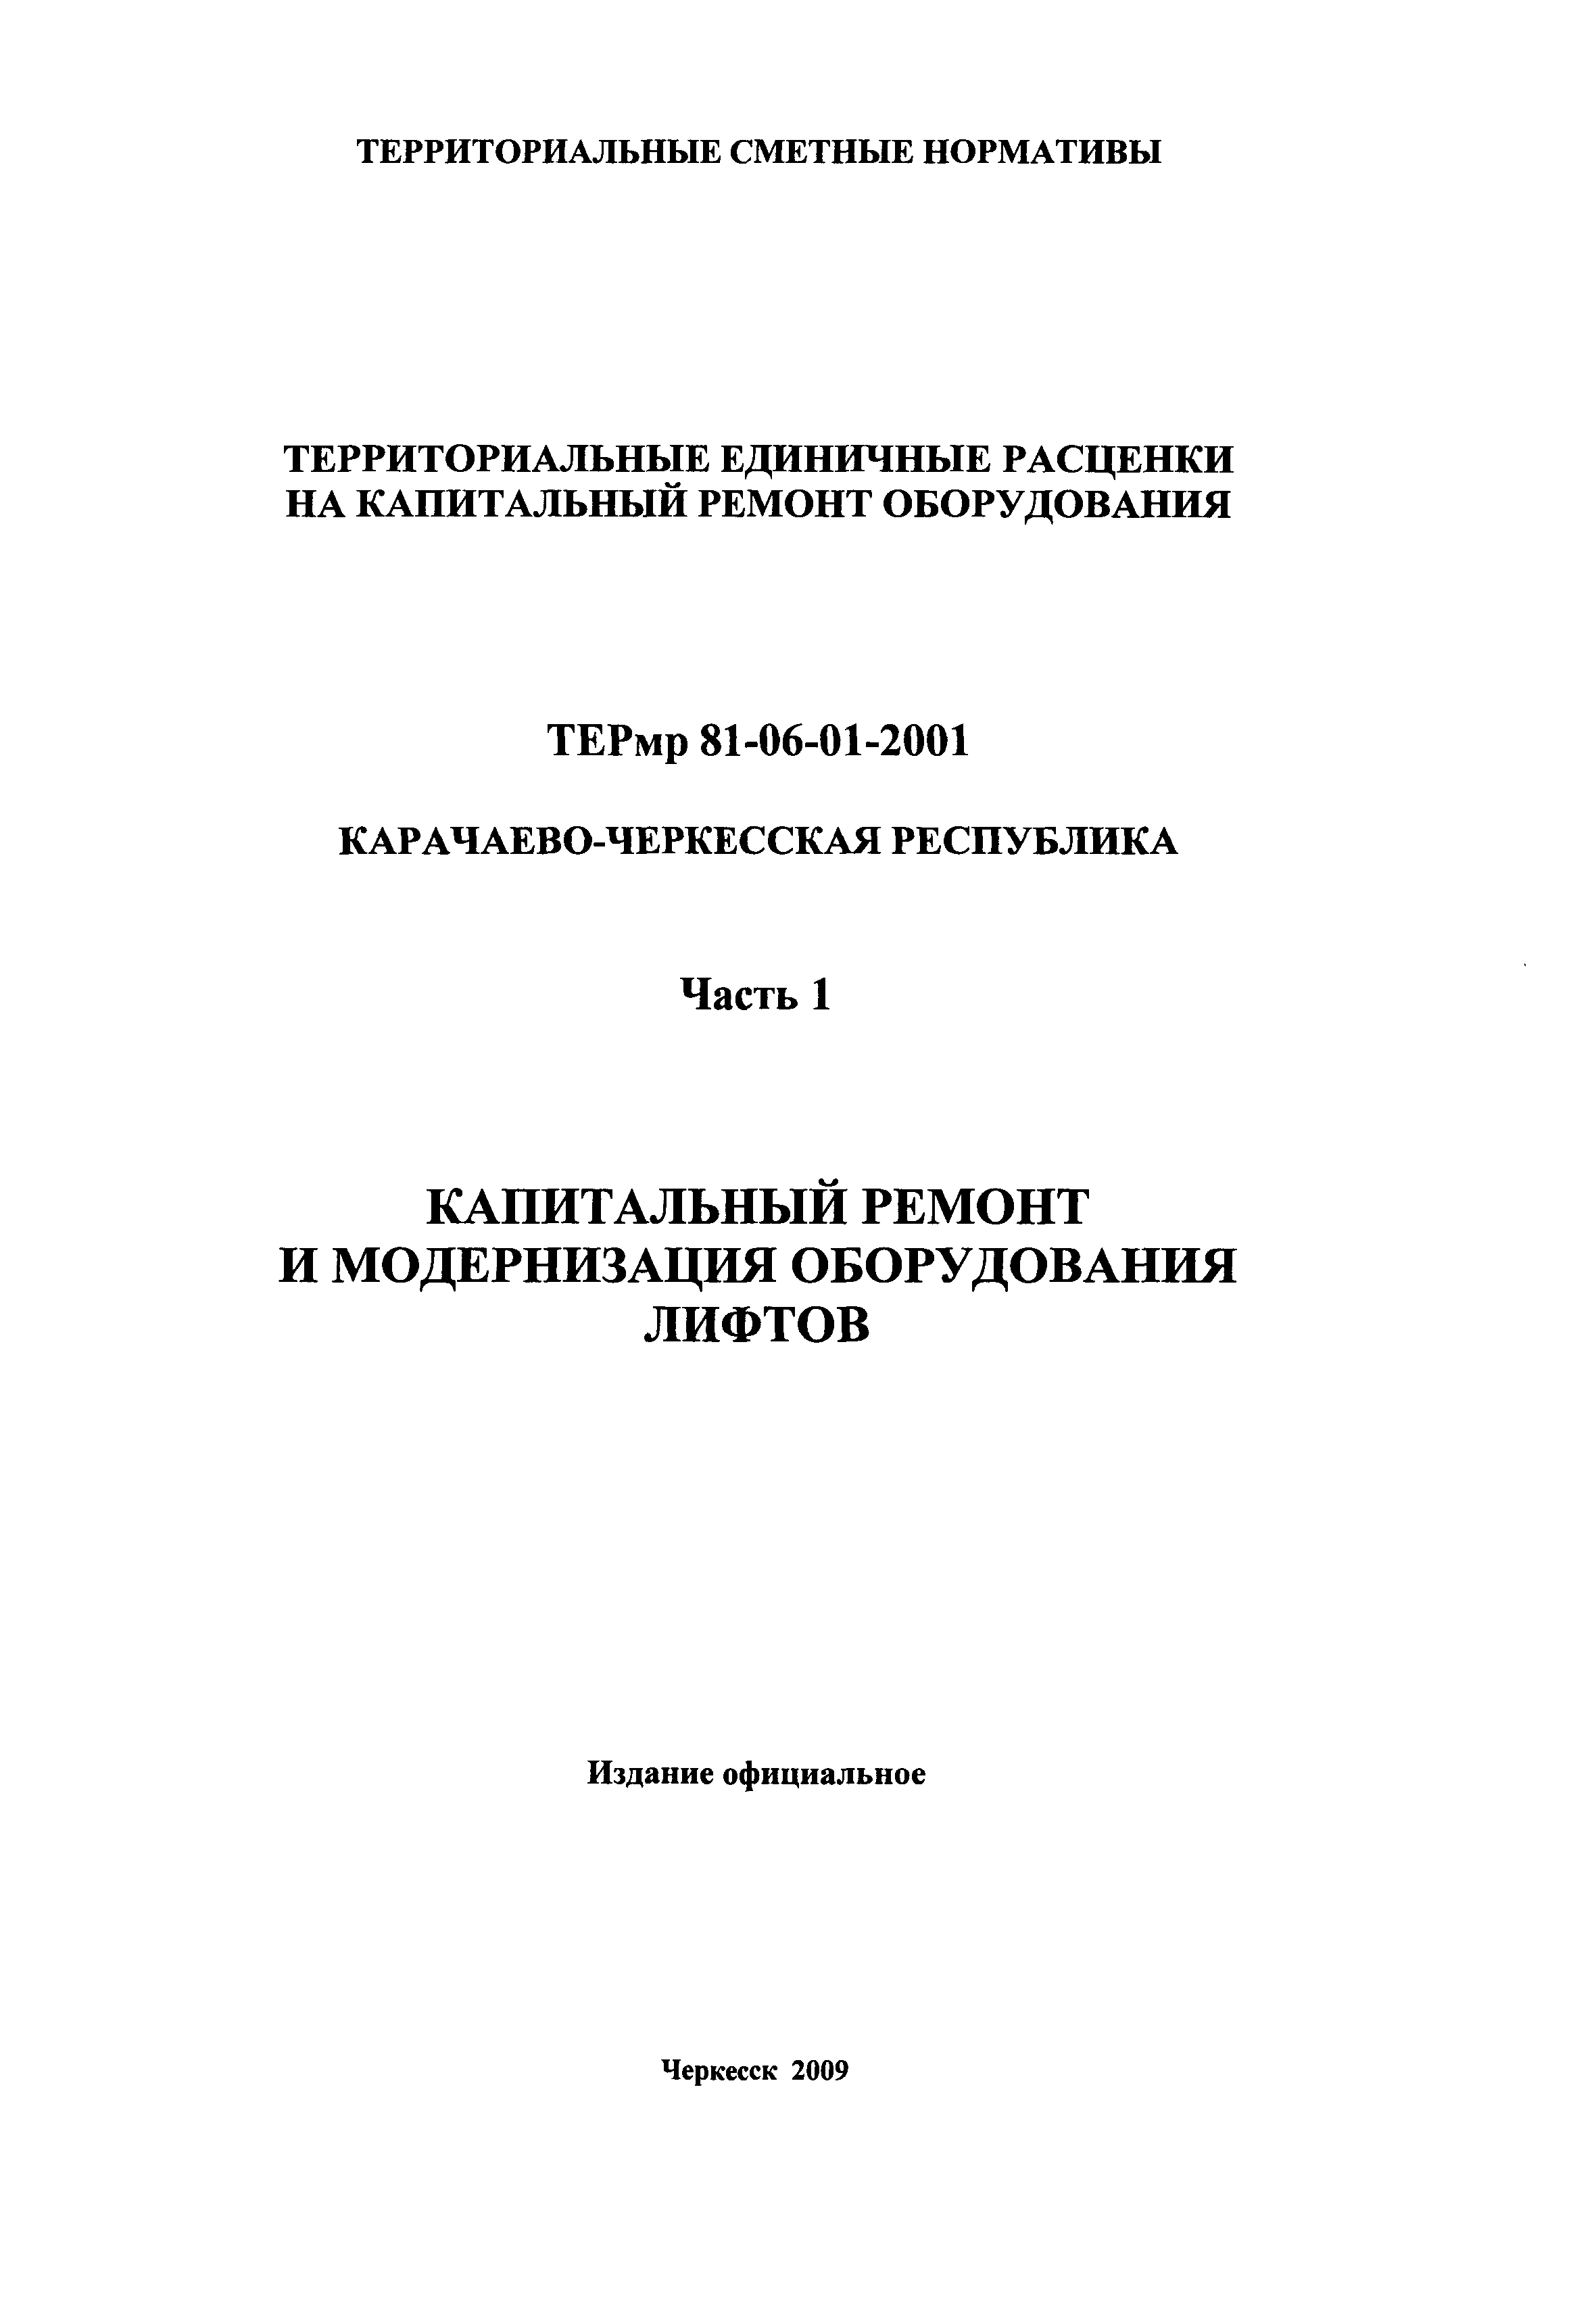 ТЕРмр Карачаево-Черкесская Республика 01-2001